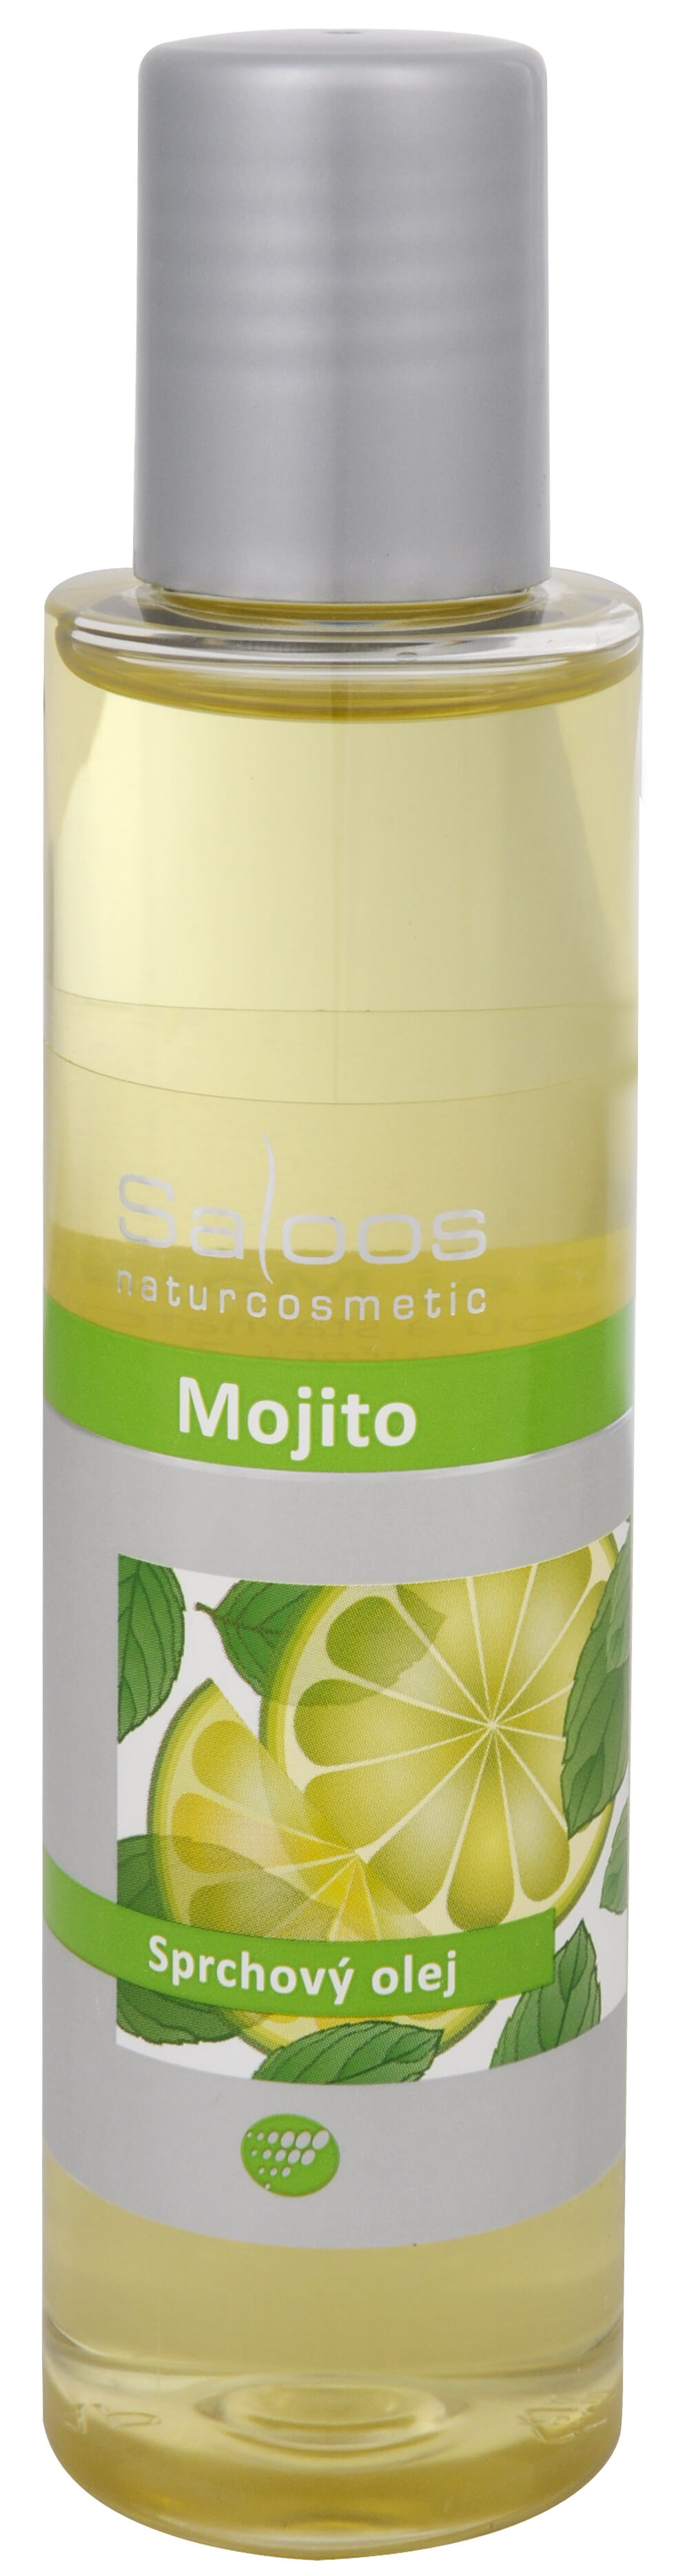 Zobrazit detail výrobku Saloos Sprchový olej - Mojito 125 ml + 2 měsíce na vrácení zboží